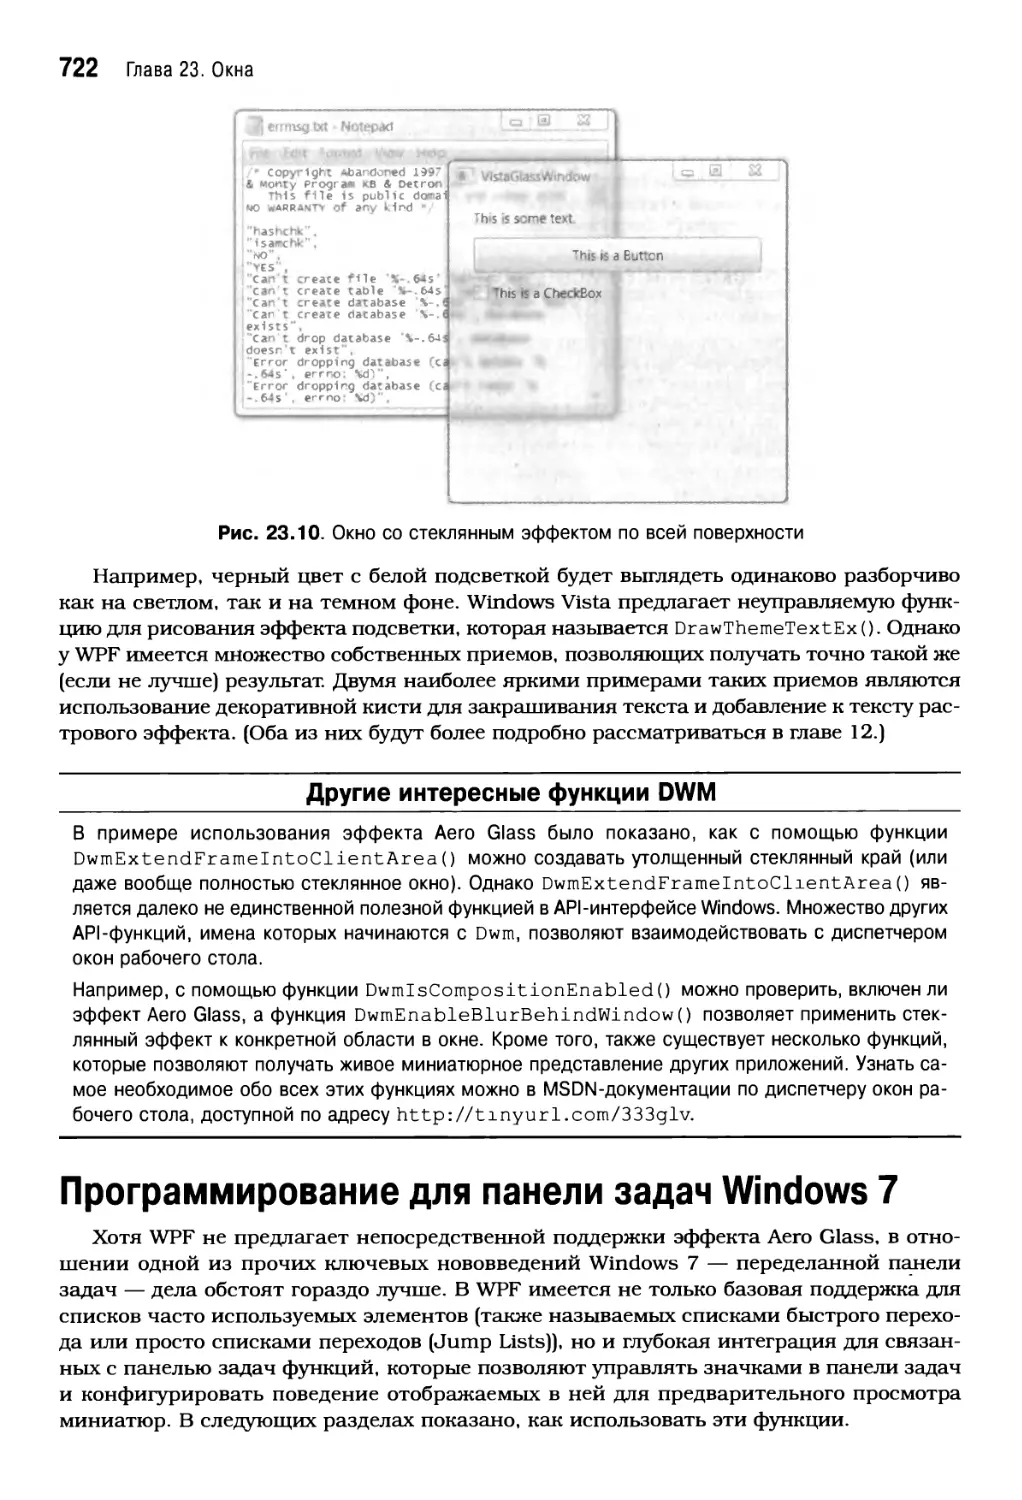 Программирование для панели задач Windows 7